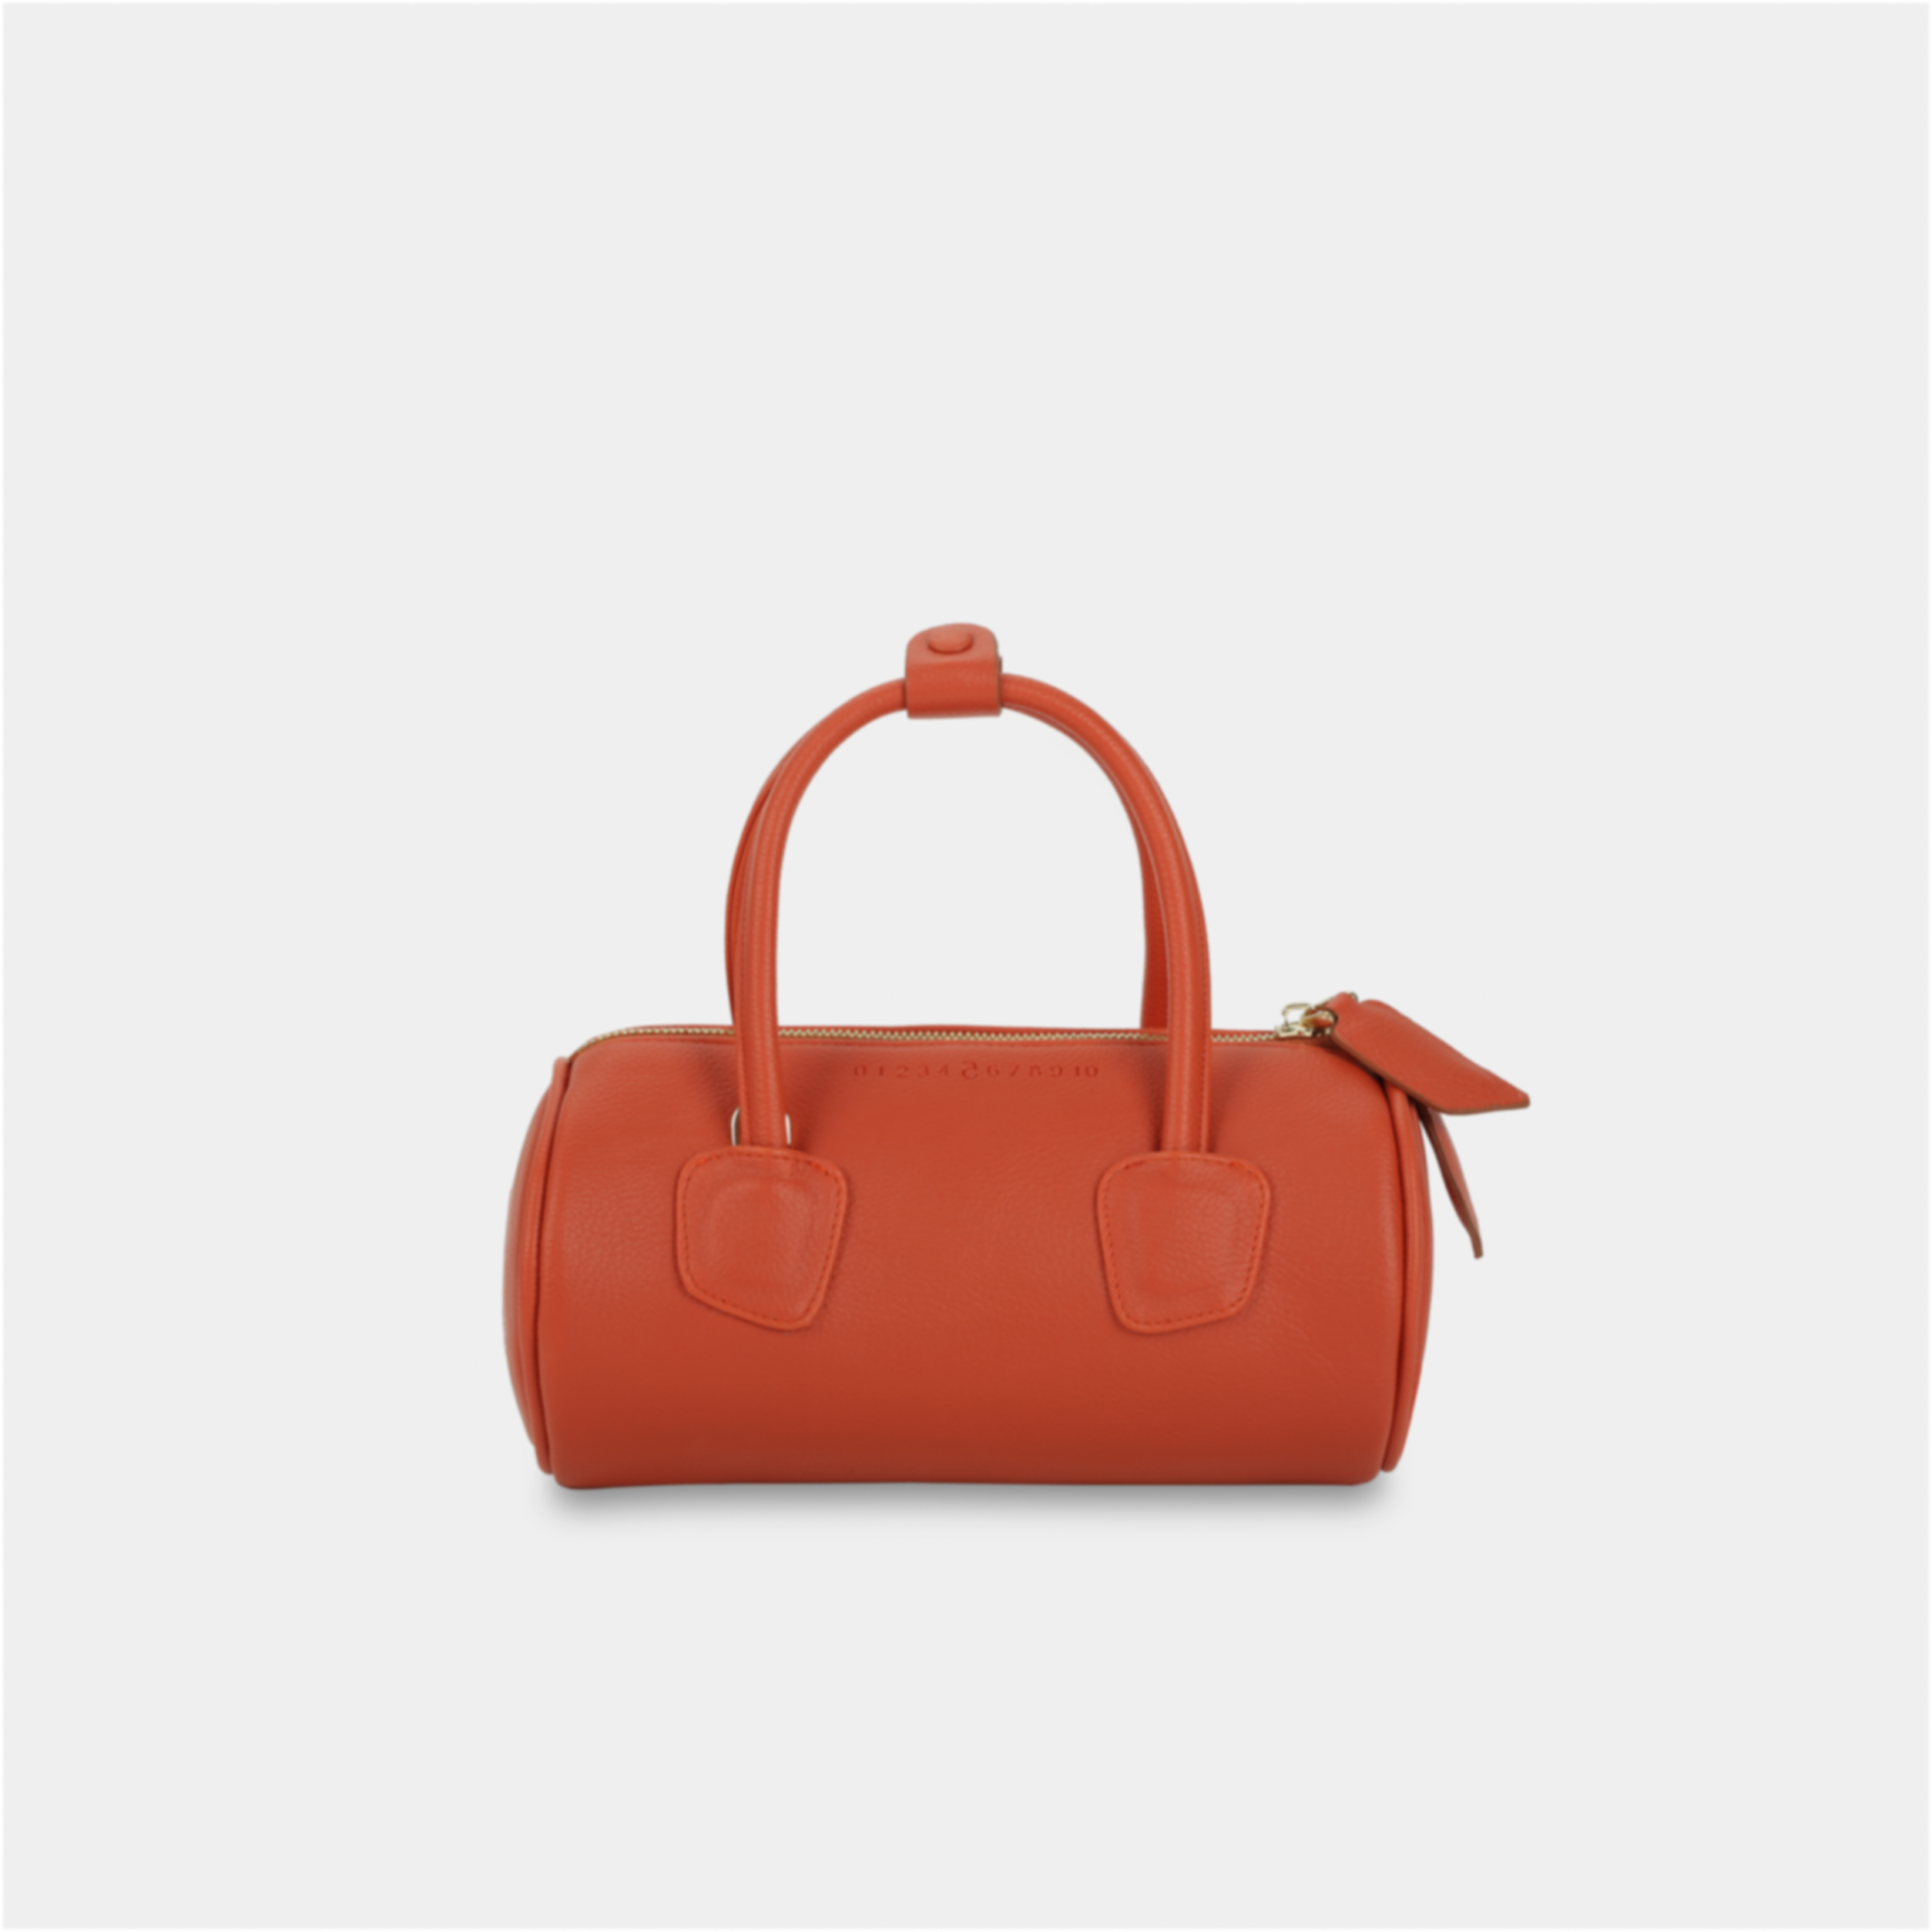 Red orange ROLL handbag